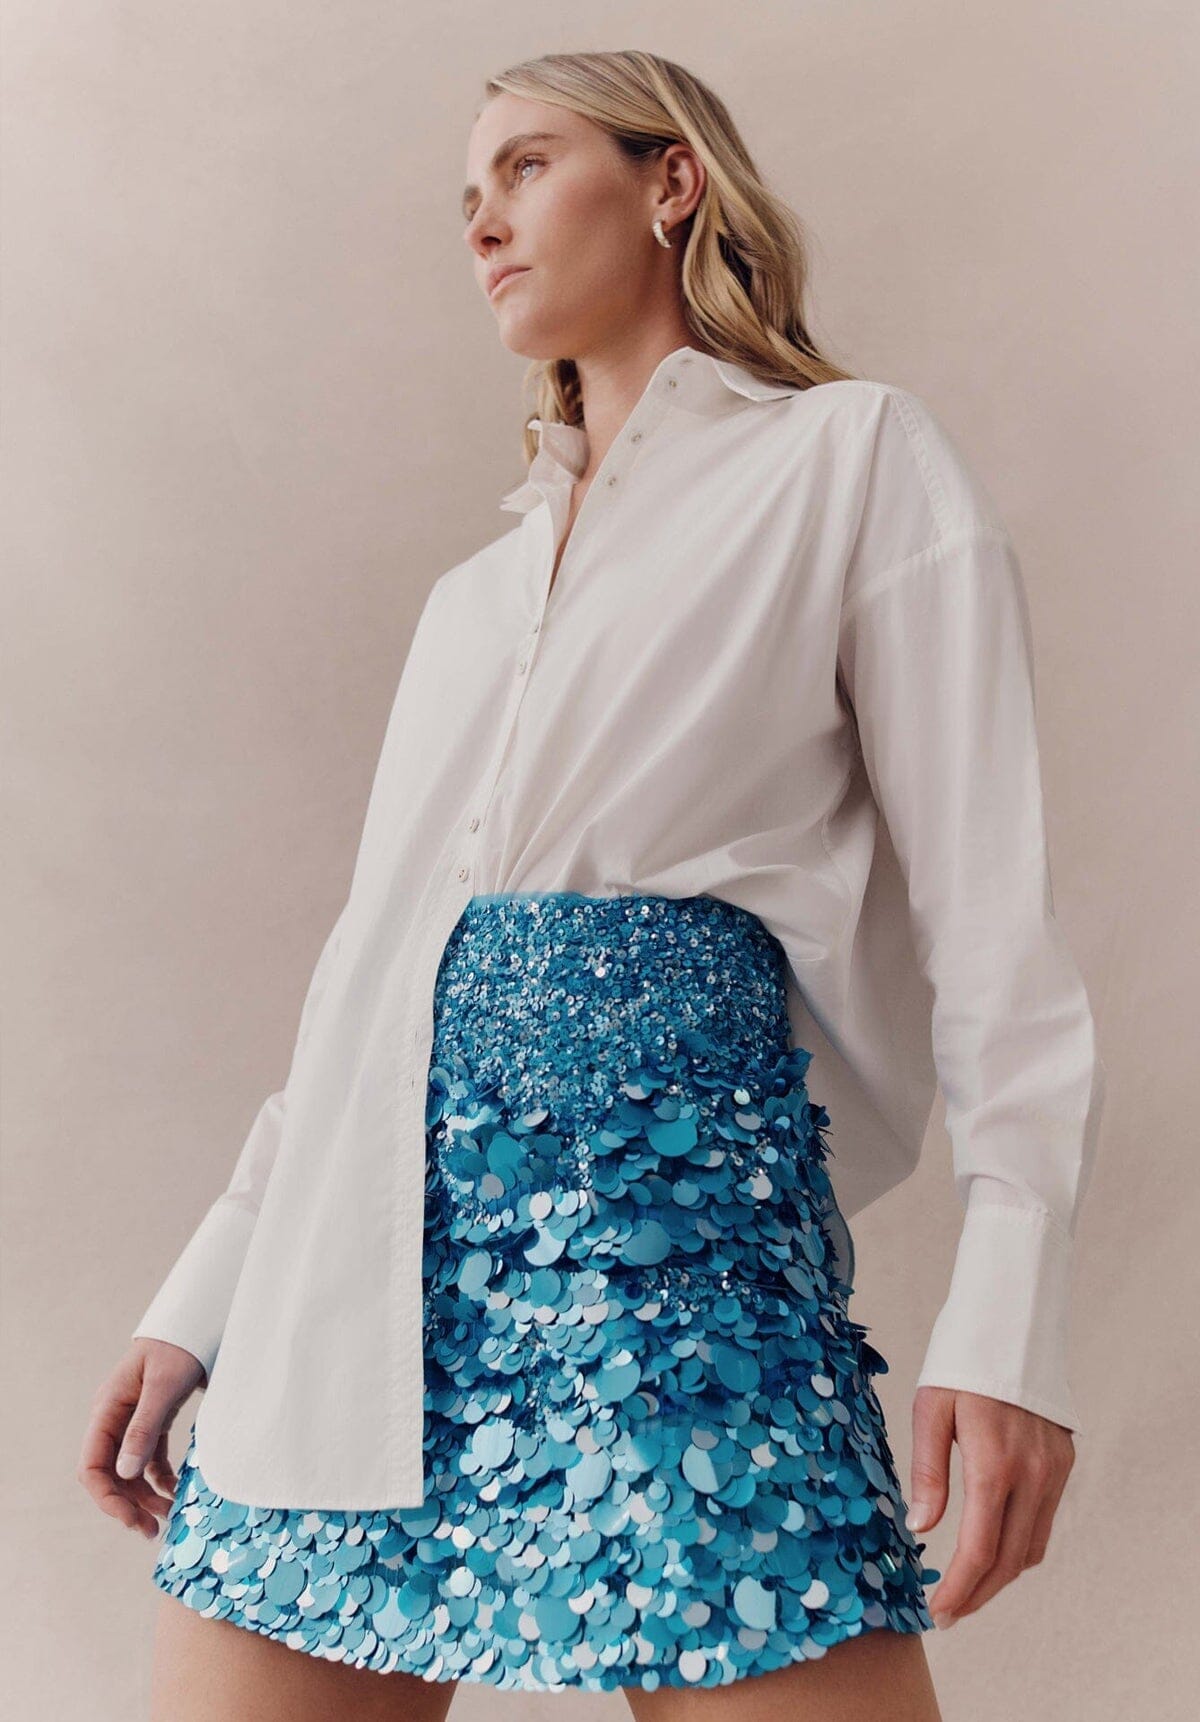 SELL Cherie Sequin Mini Skirt Azure - Blue Gift Card Ex Rentals 